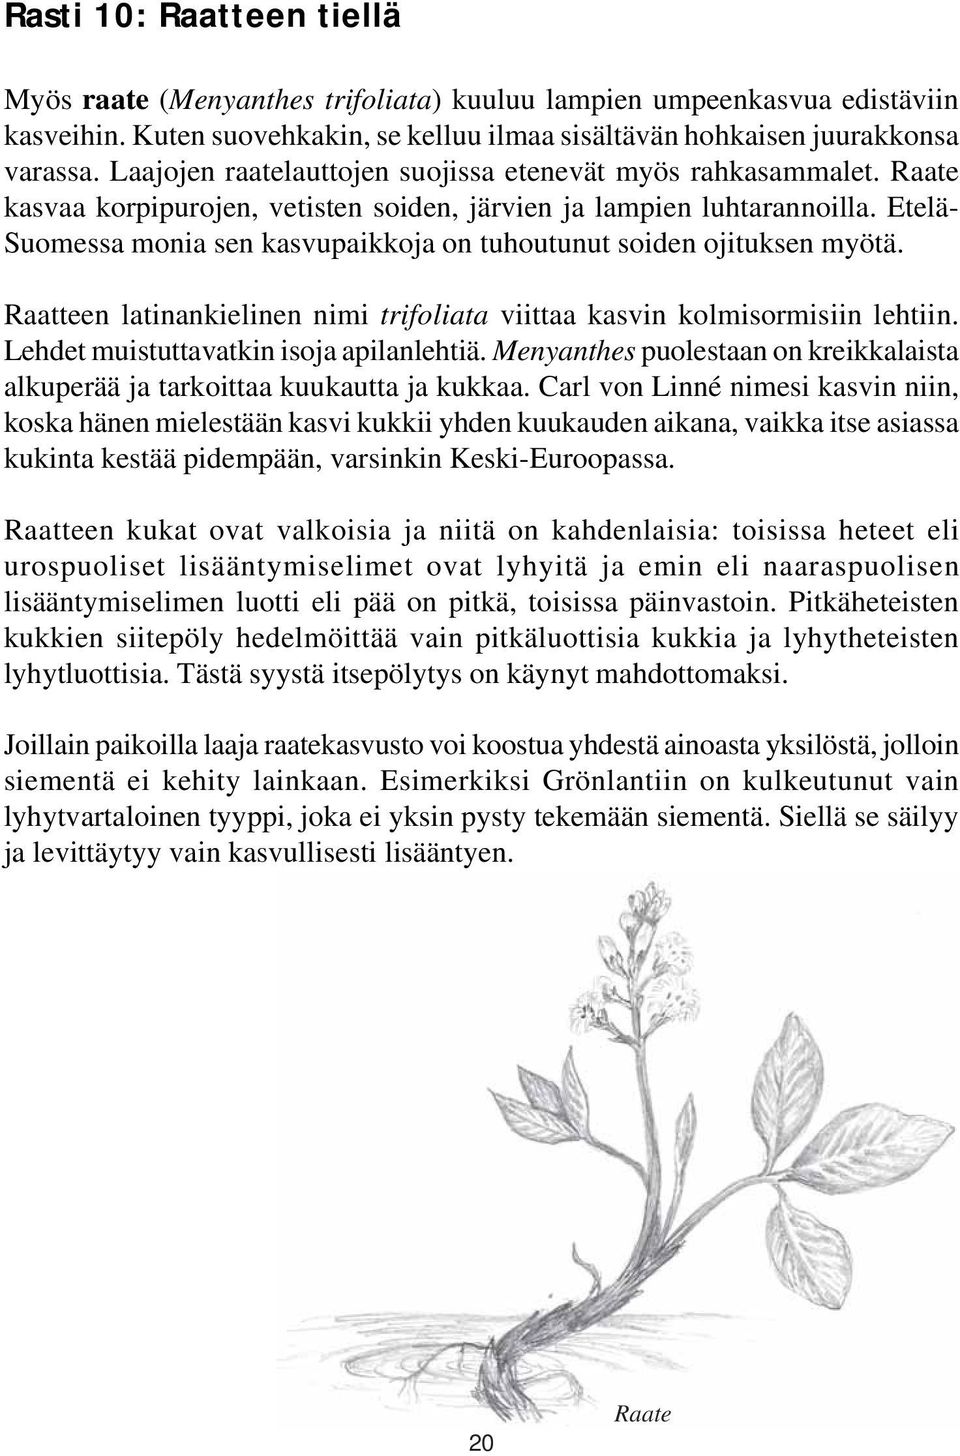 Etelä- Suomessa monia sen kasvupaikkoja on tuhoutunut soiden ojituksen myötä. Raatteen latinankielinen nimi trifoliata viittaa kasvin kolmisormisiin lehtiin. Lehdet muistuttavatkin isoja apilanlehtiä.